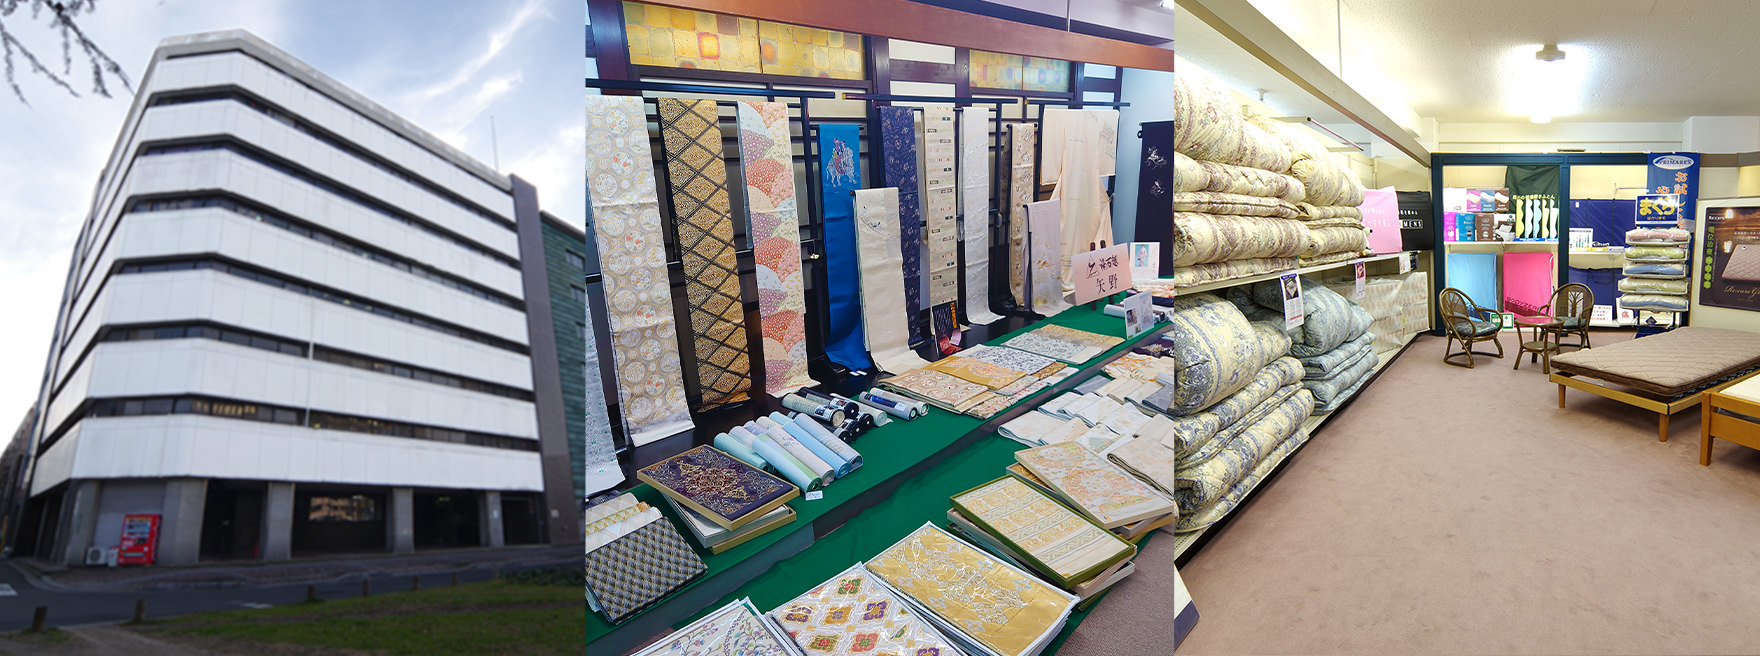 広県繊は全国唯一の組合組織による繊維製品総合卸です。